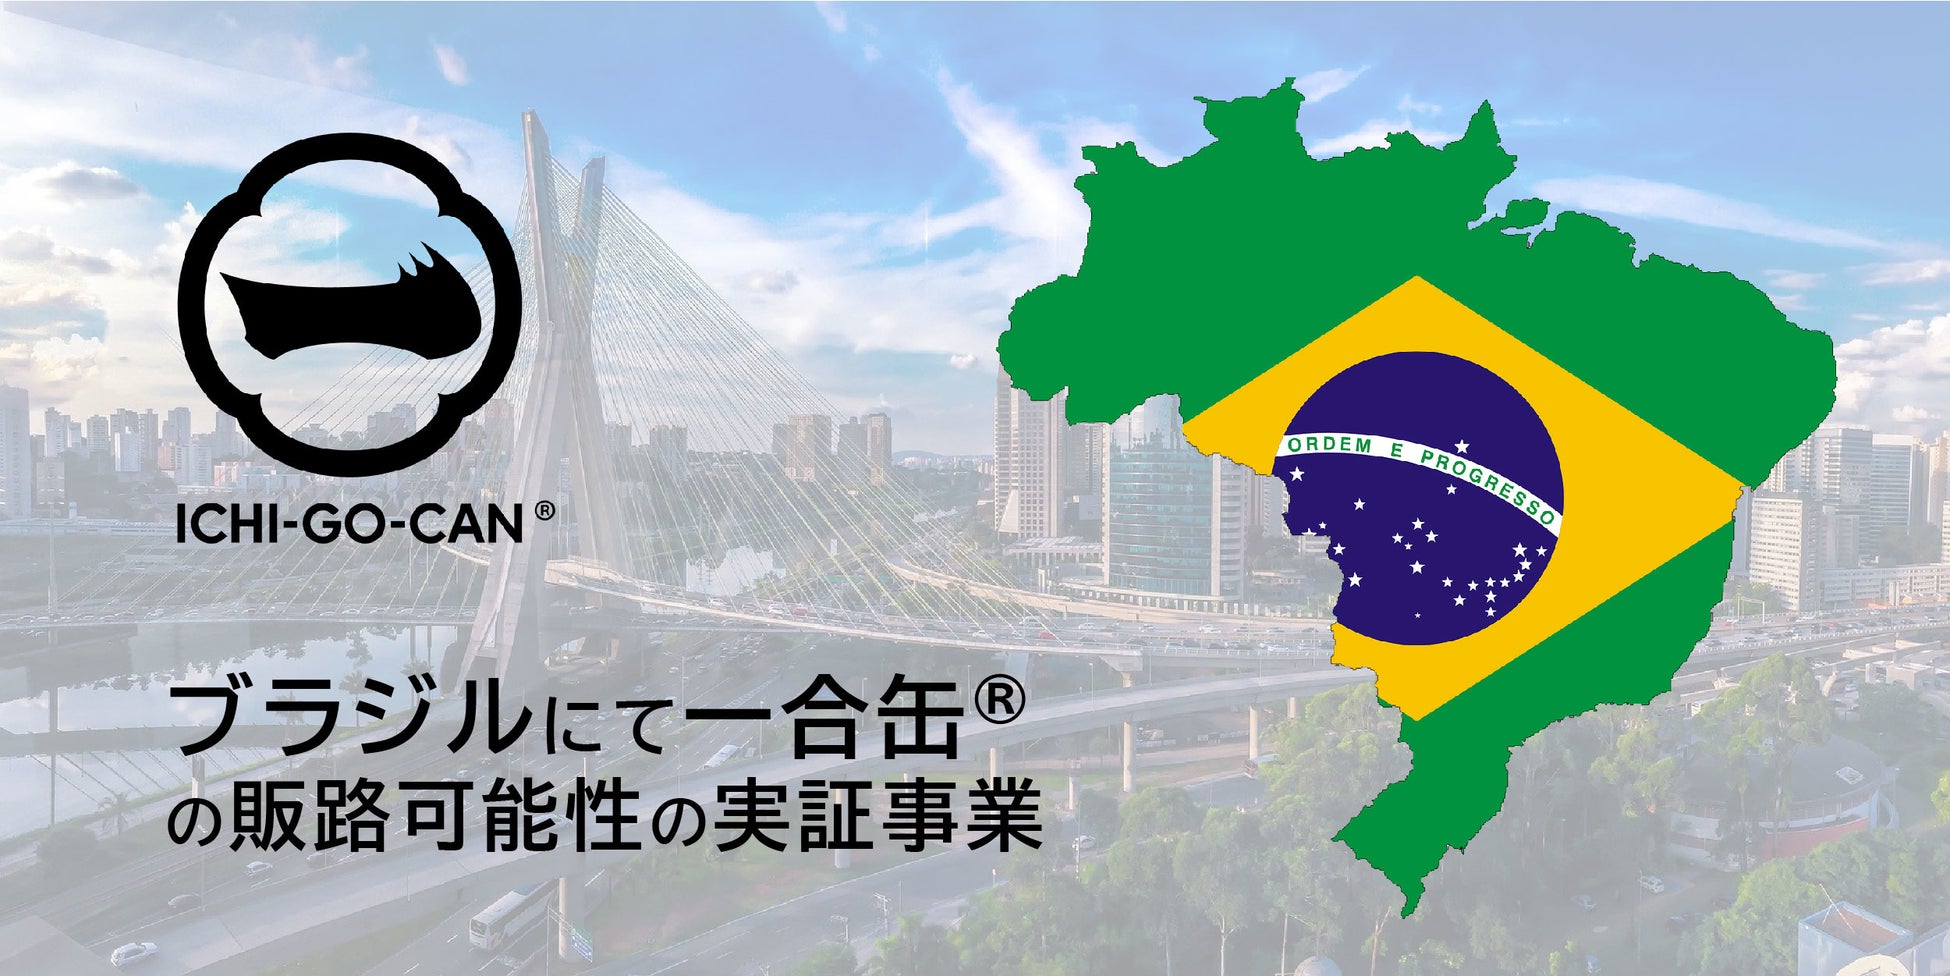 【ブラジル進出】日本酒ブランド「ICHI-GO-CAN®」運営のAgnavi社、人口2.1億人を誇る南米の大国ブラジルで大規模な実証実験を開始！JETROや、現地の事業会社と連携。